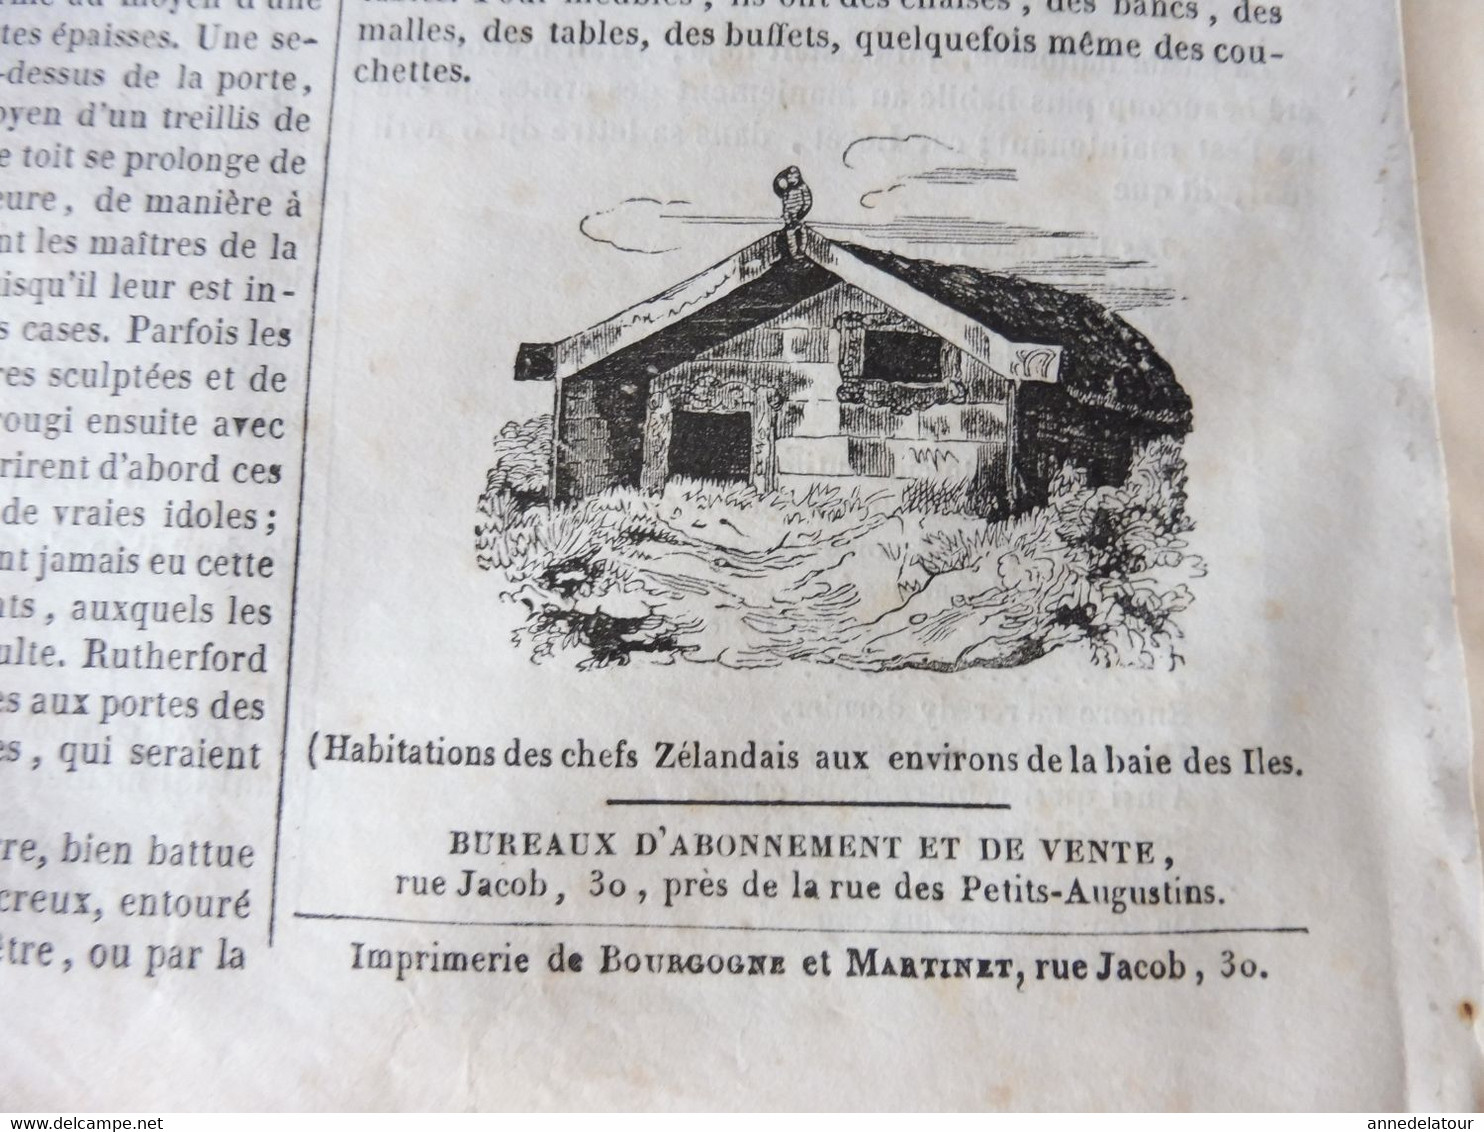 1839 MP  Hospitalité en Turquie, Les utopistes célèbres, LE SANGLIER, Journaux en vers, Habitations en New Zealand, Etc